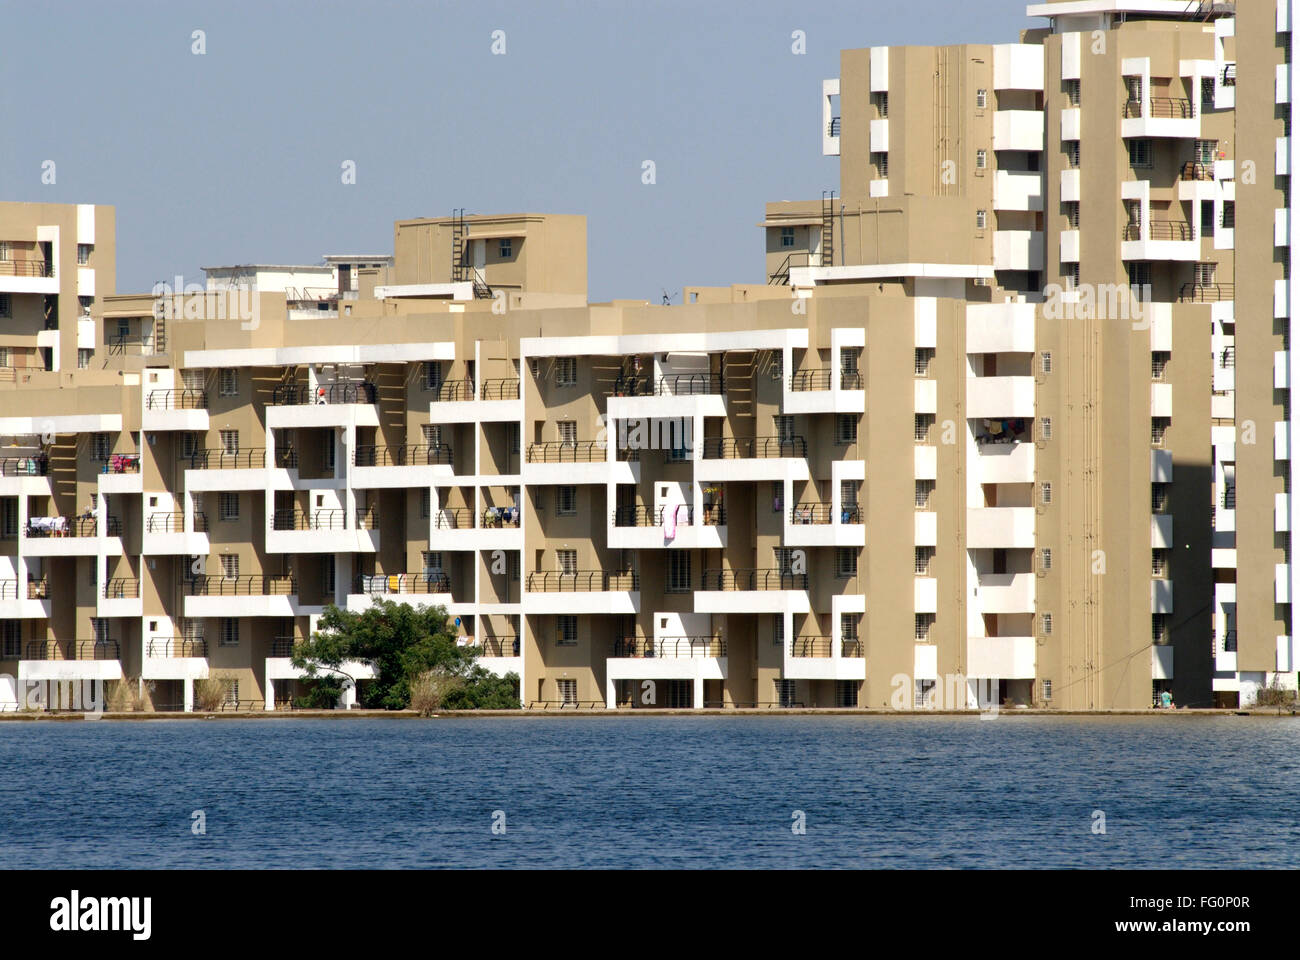 Riesige Wohnung komplexe Multi stöckige Gebäude unter dem Wasserspiegel des Sees Katraj, Pune, Maharashtra, Indien Stockfoto